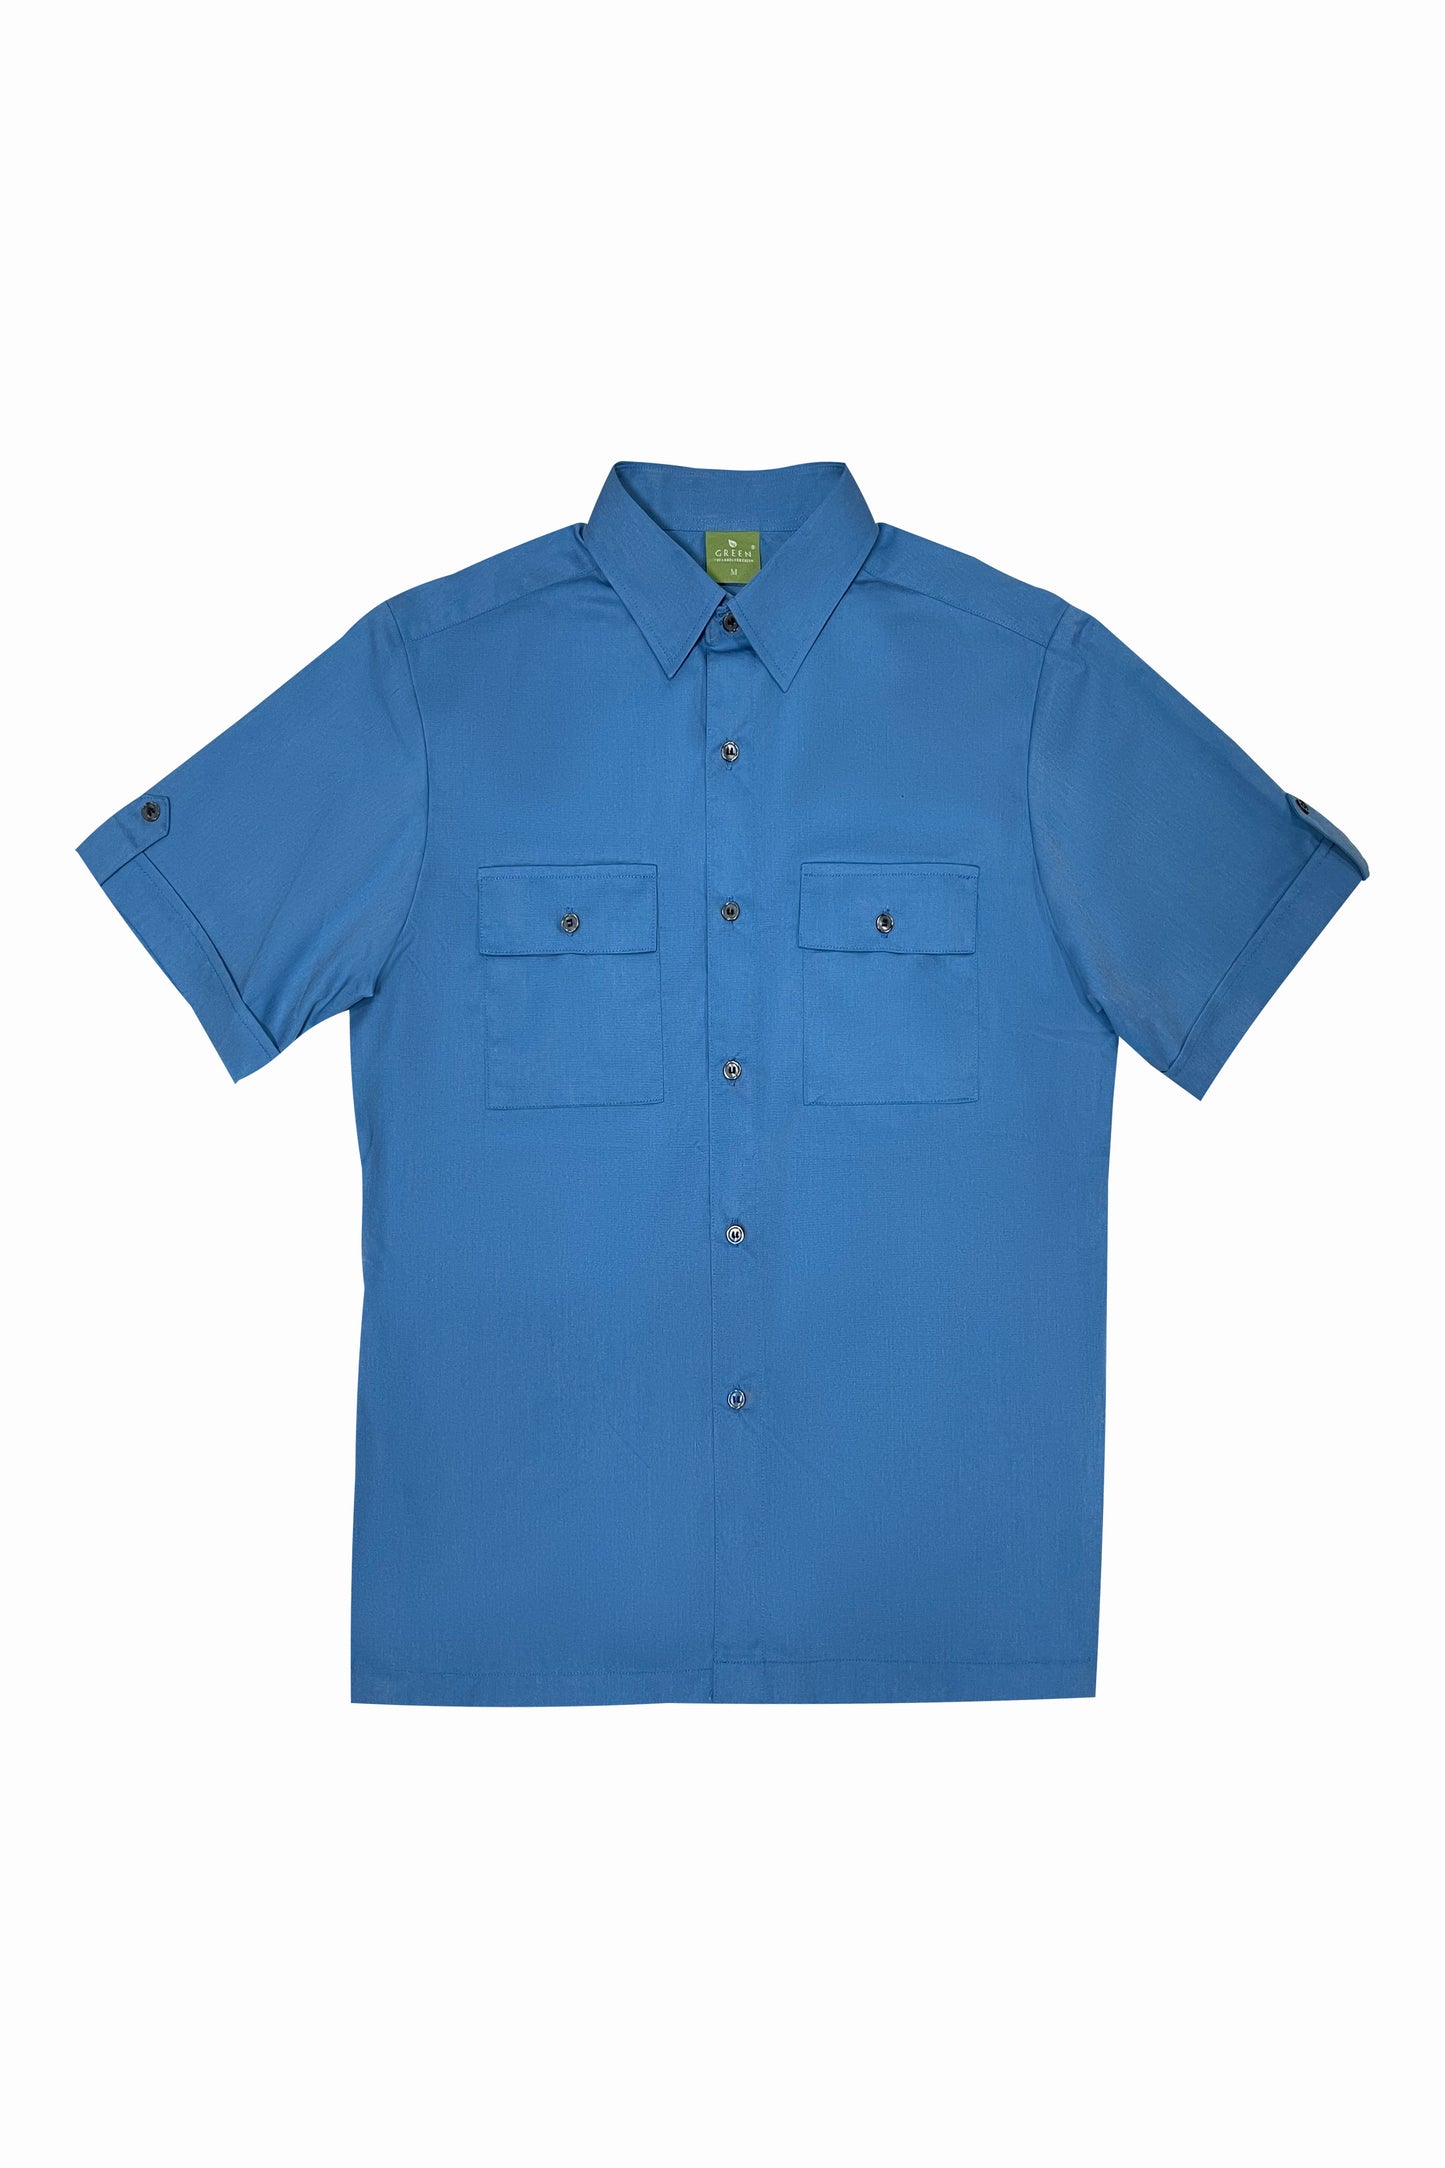 APSN Blue Short Sleeve Shirt, Retail Operations